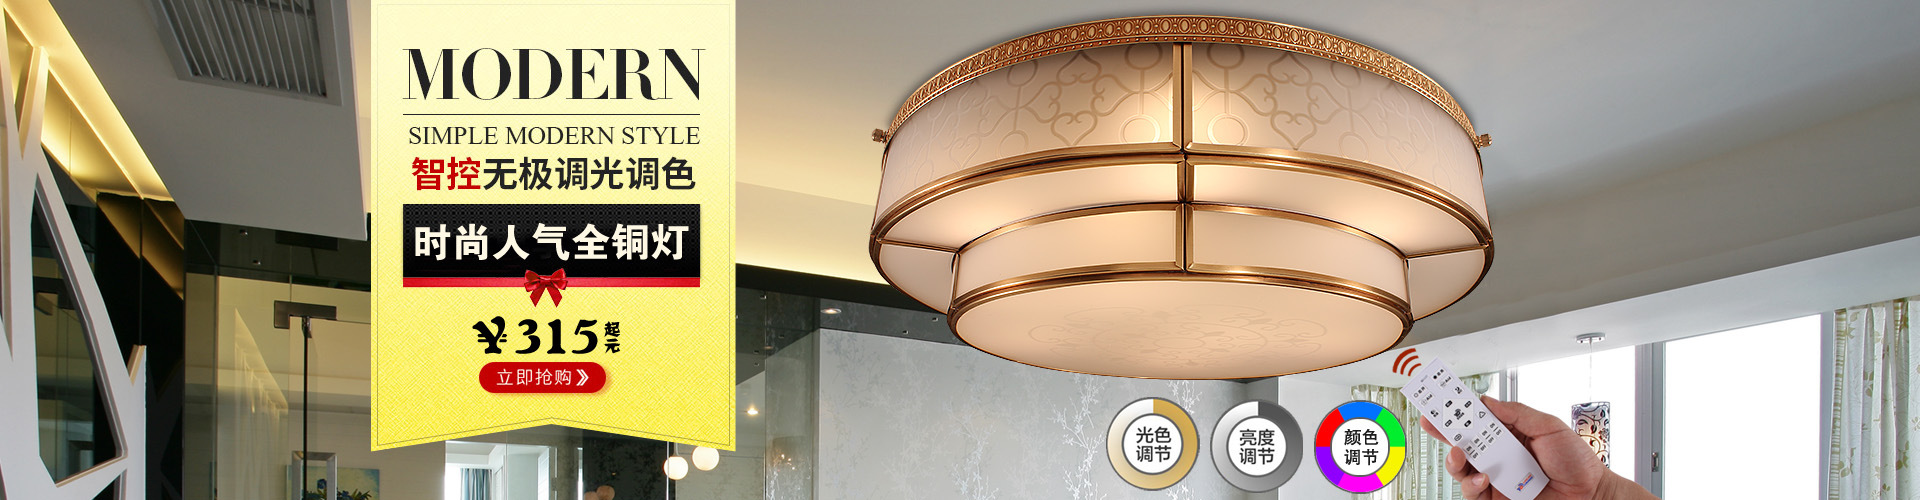 新中式全铜客厅吊灯欧式卧室纯铜灯餐厅书房美式中国风灯一件代发